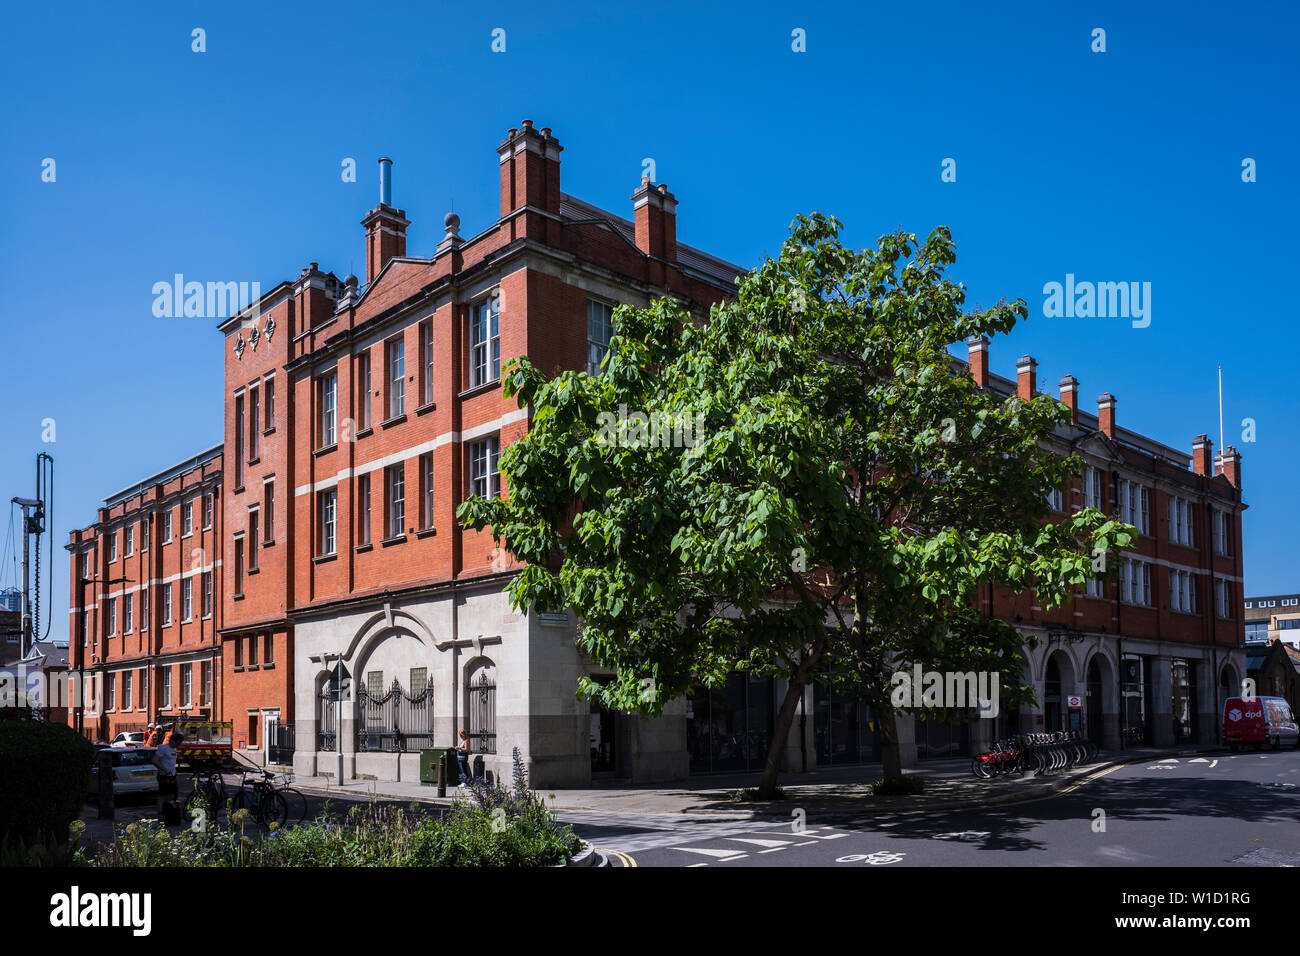 Union Street, quartier de Southwark, Londres, Angleterre, Royaume-Uni Banque D'Images